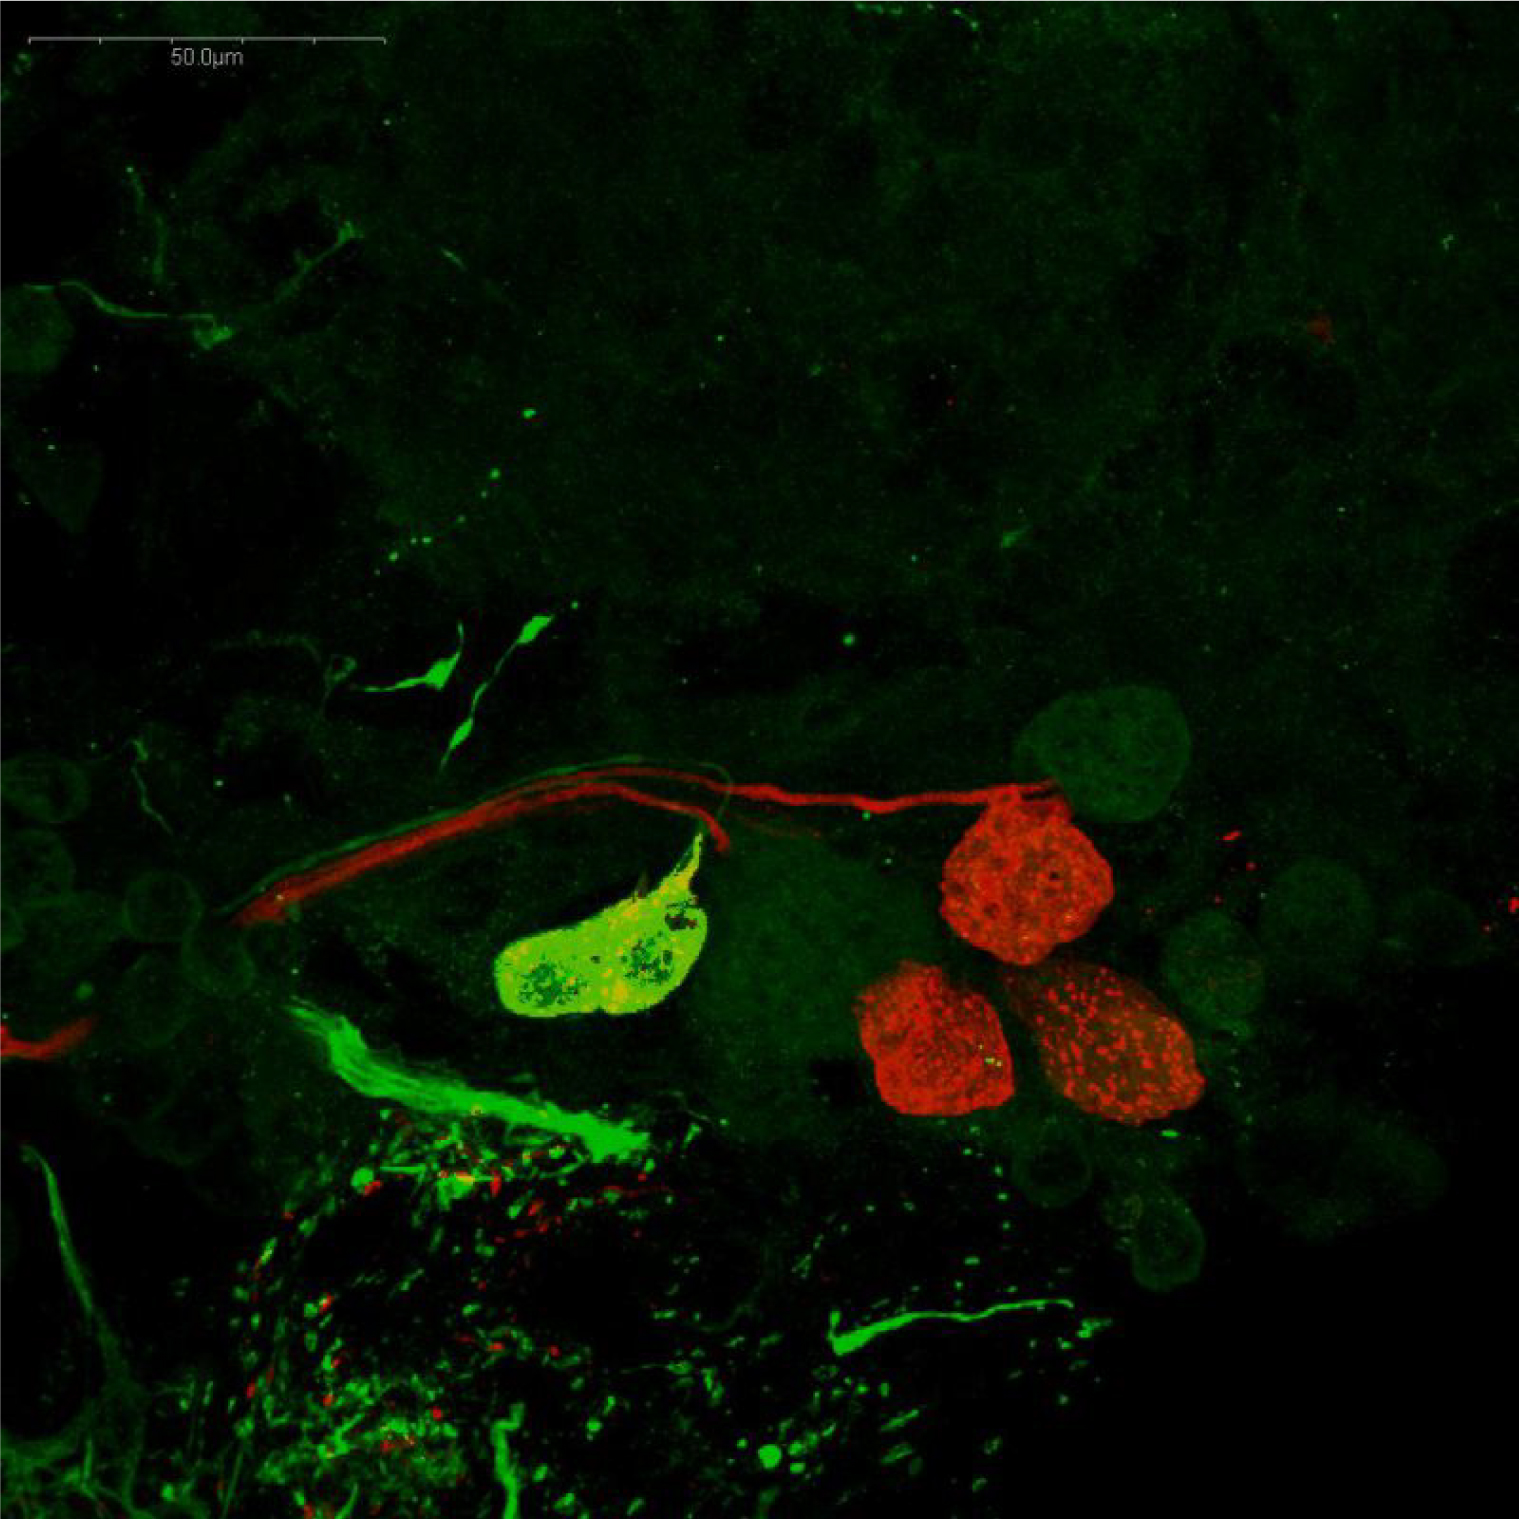 ザリガニ眼柄のドーパミン作動性およびセロトニン作動性ニューロンの免疫蛍光染色像